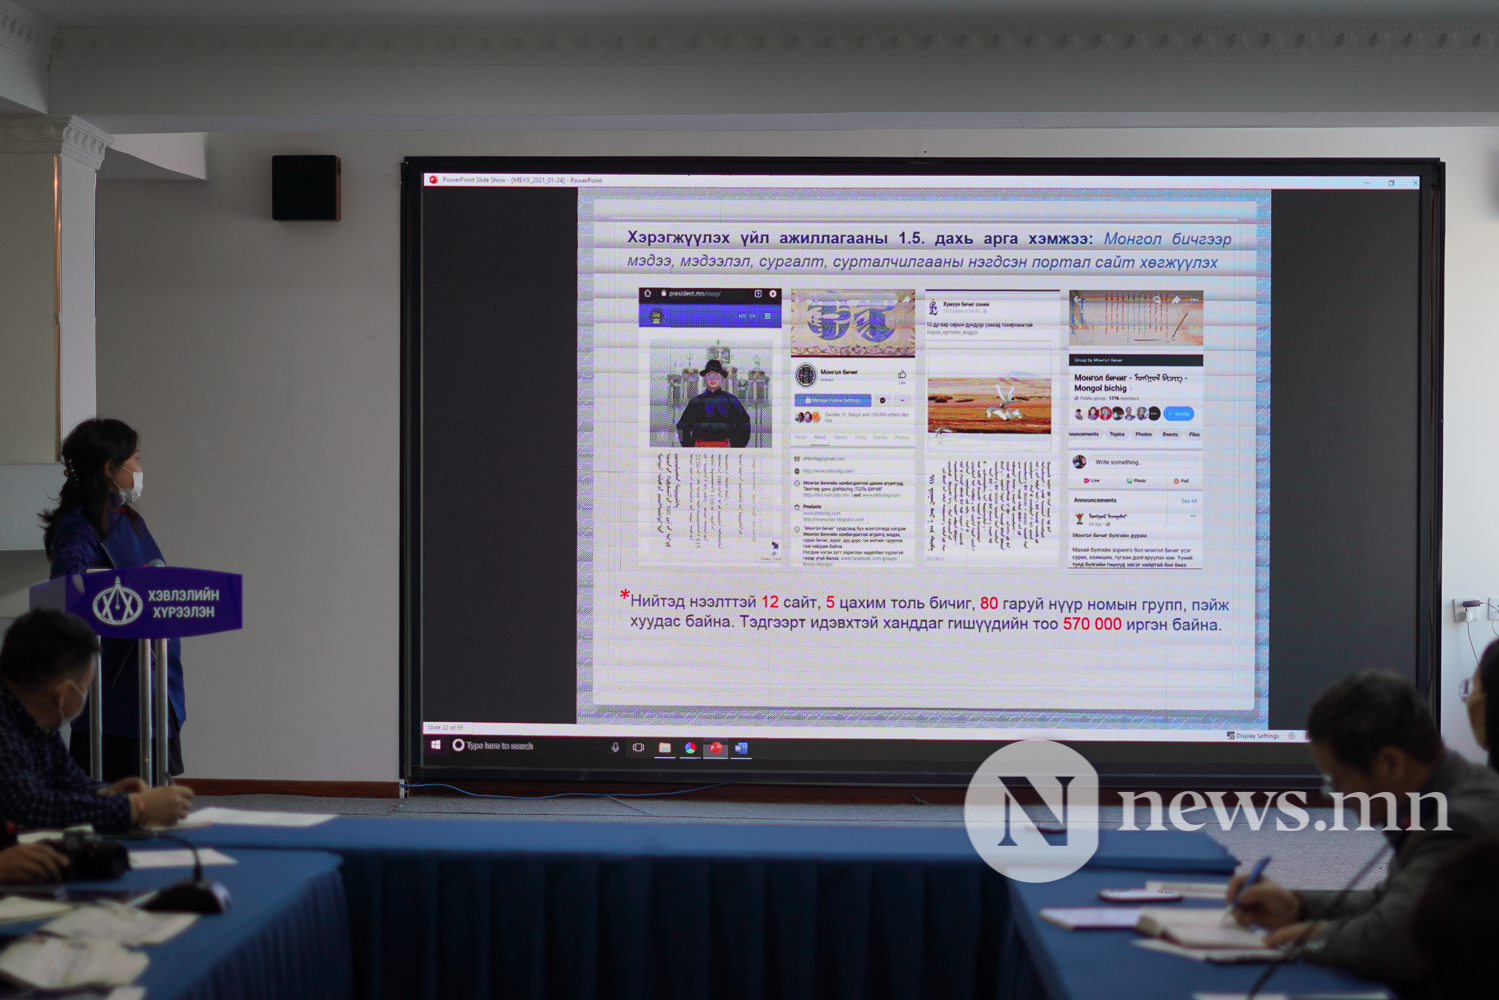 Монгол бичгийн үндэсний хөтөлбөрийг хэрэгжүүлэхэд хэвлэл мэдээллийн байгууллагуудын үүрэг, оролцоо (8 of 14)